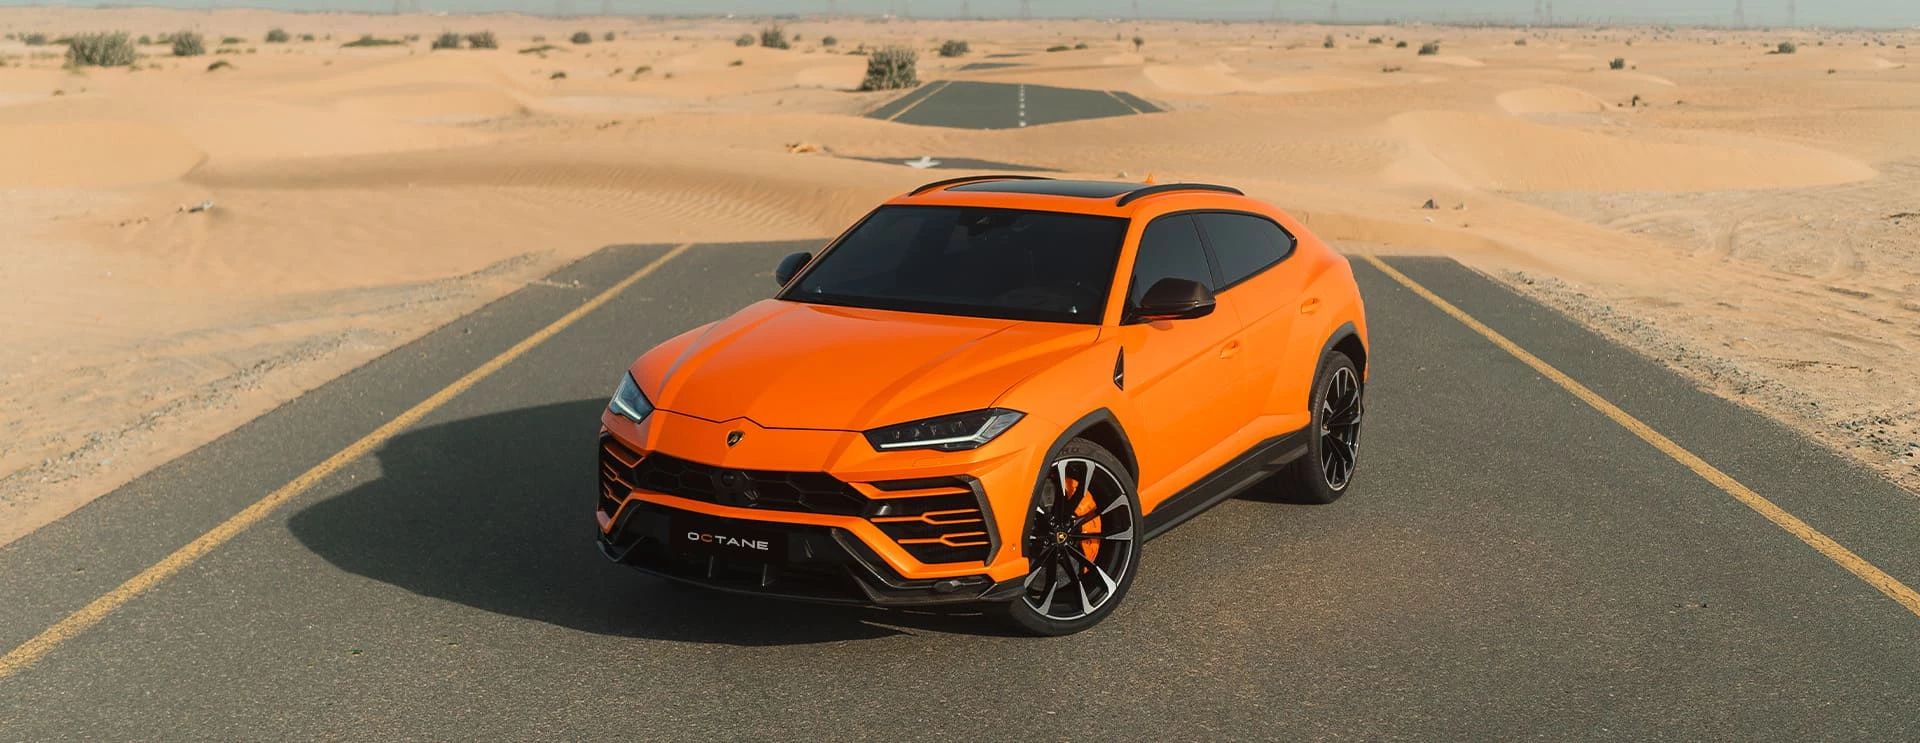 Lamborghini Urus Carbon Orange